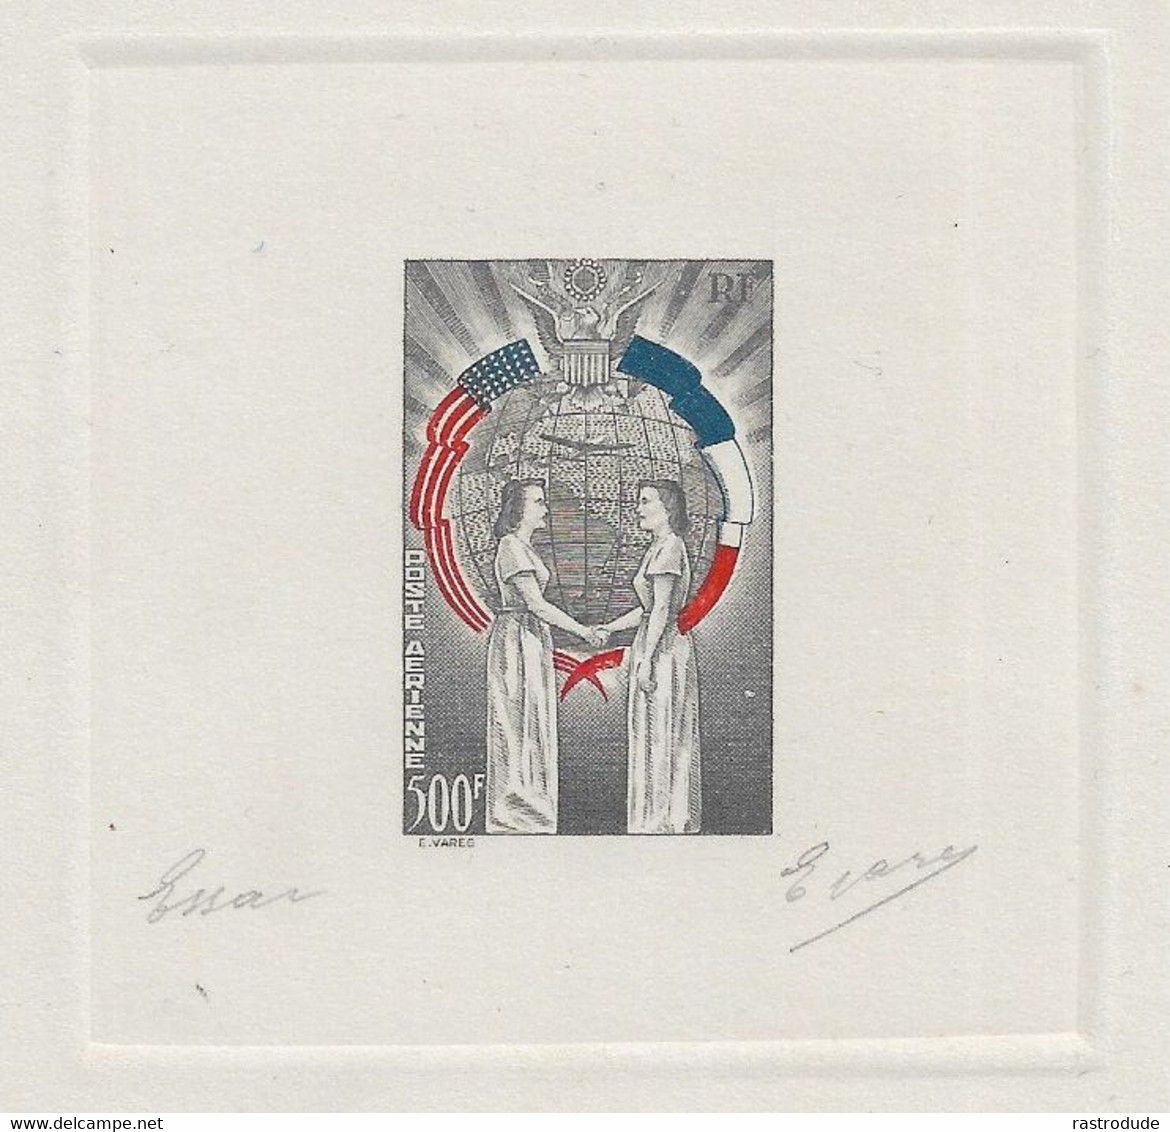 1949 FRANCE - TROIS COULEURS EPREUVE D'ARTISTE - NON EMIS -  L'AMITIÉ FRANCO-AMÉRICAINE SIGNE E.VARES - RARE - Artistenproeven